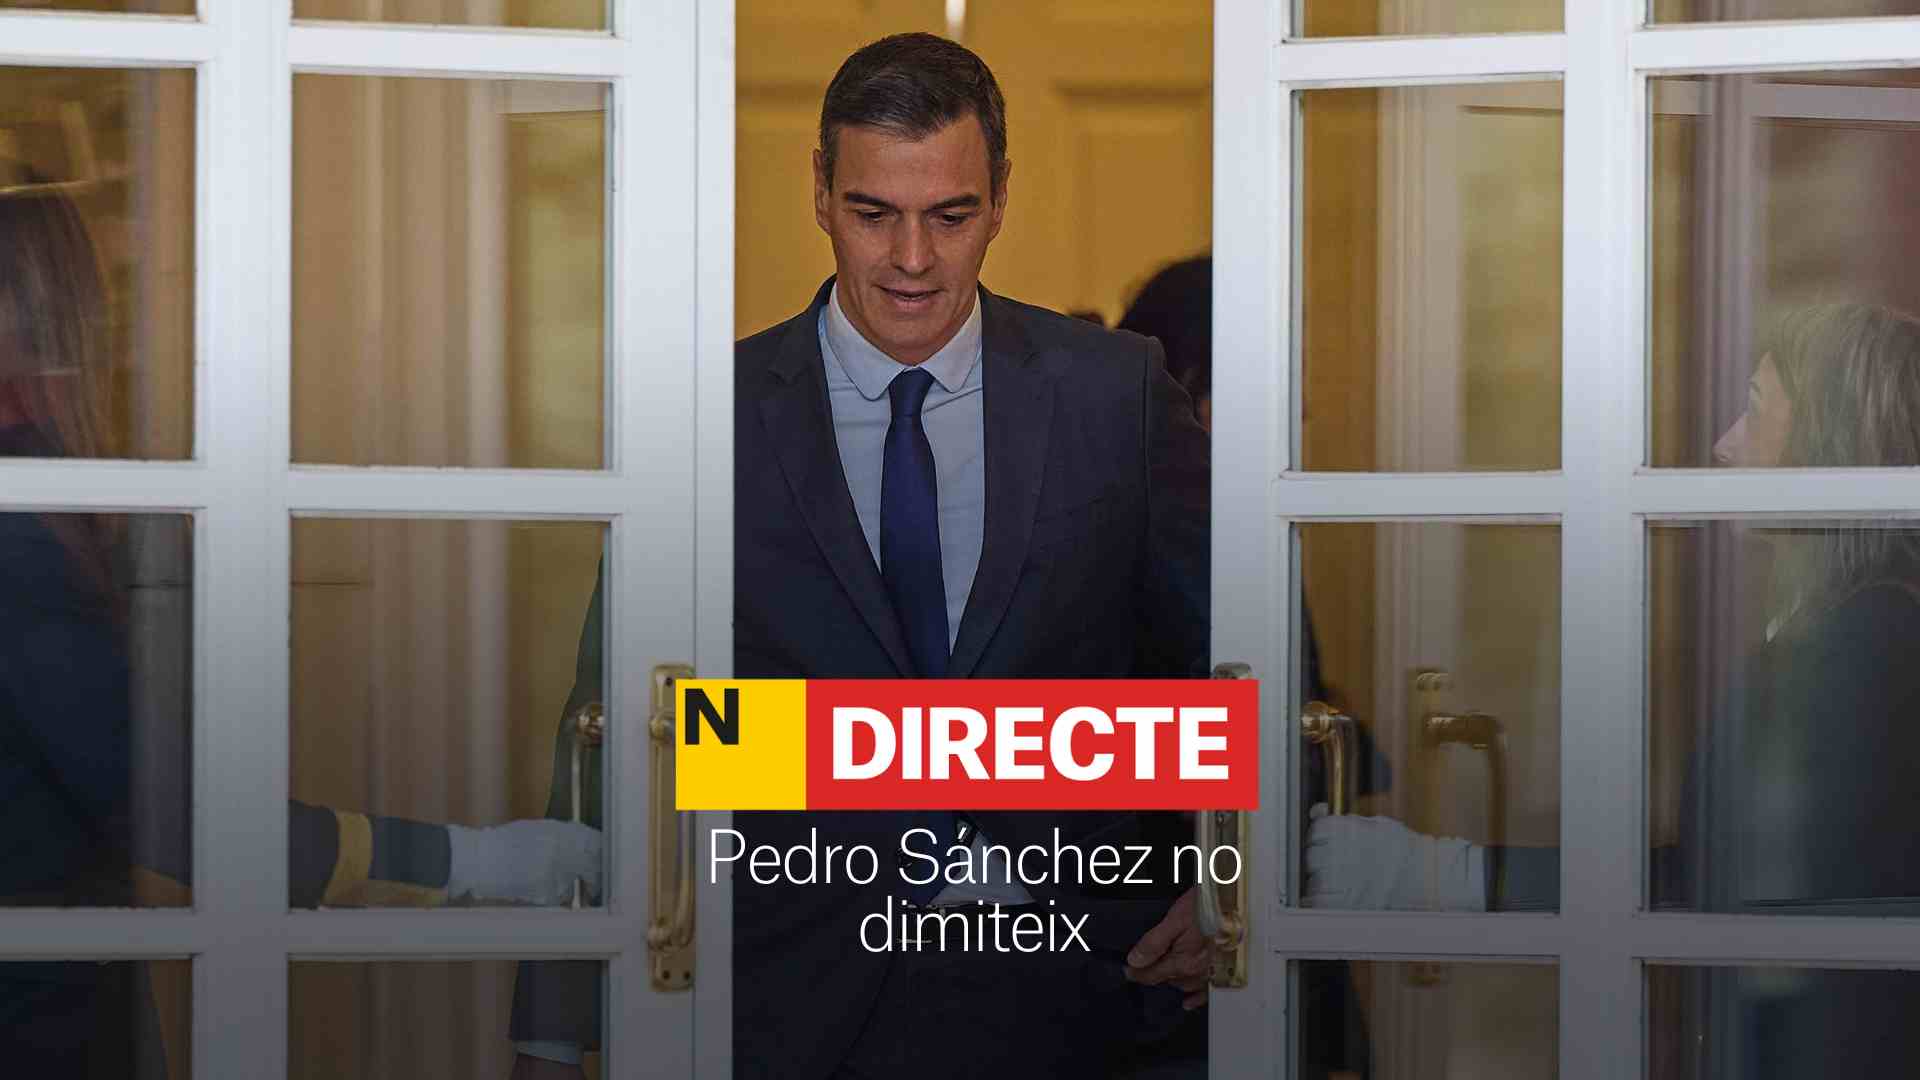 Pedro Sánchez no dimiteix, DIRECTE | Última hora del president del govern espanyol